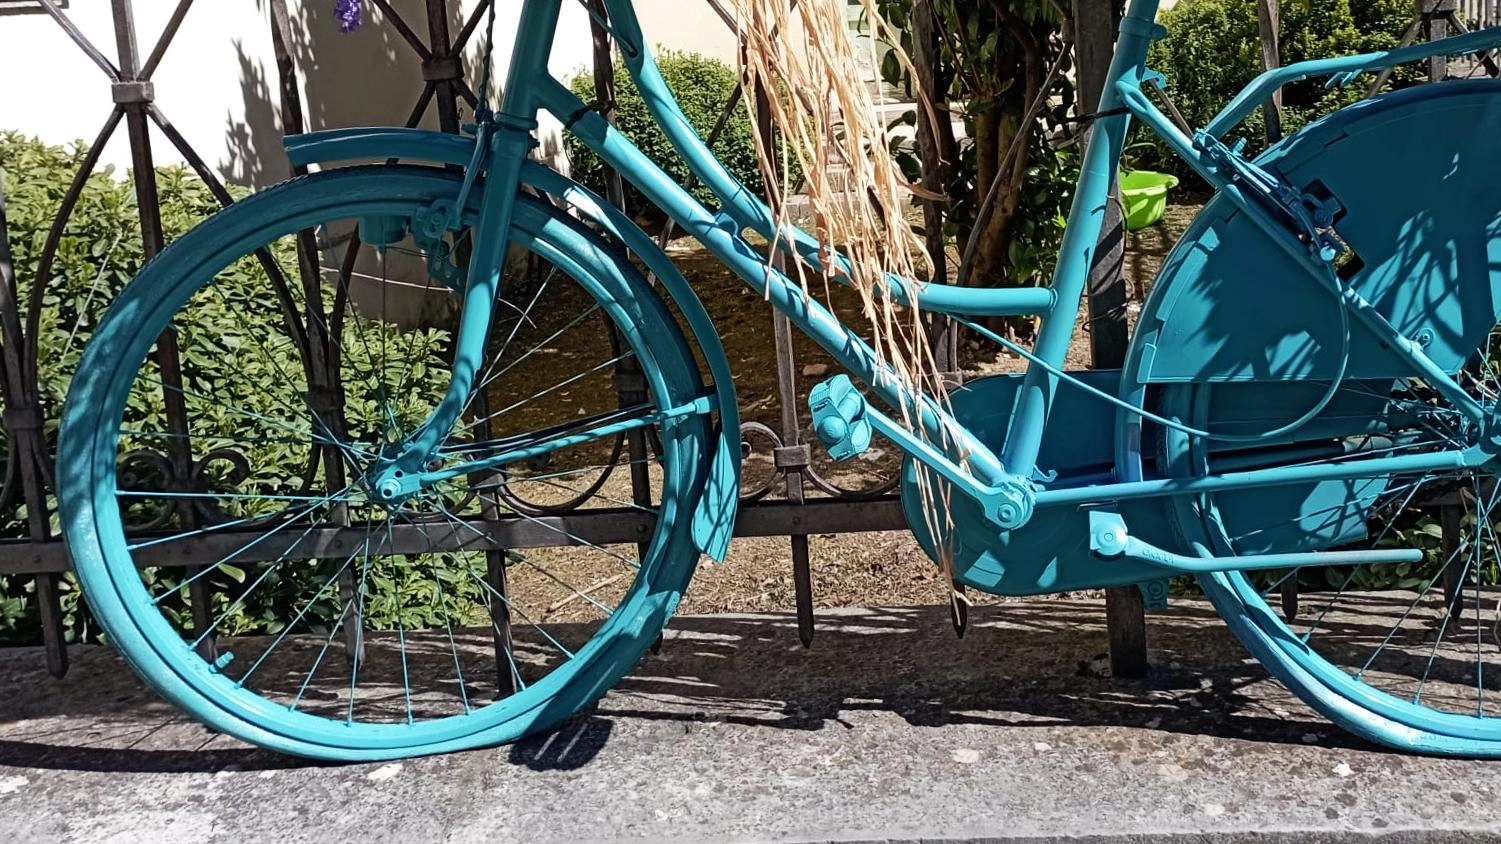 A Umbertide, un'iniziativa originale vede vecchie biciclette dipinte a fiori adornare le strade grazie a Stefano Migliorati e Laura Rossi, con l'obiettivo di abbellire la città. Umbertidesi hanno contribuito con biciclette donate.